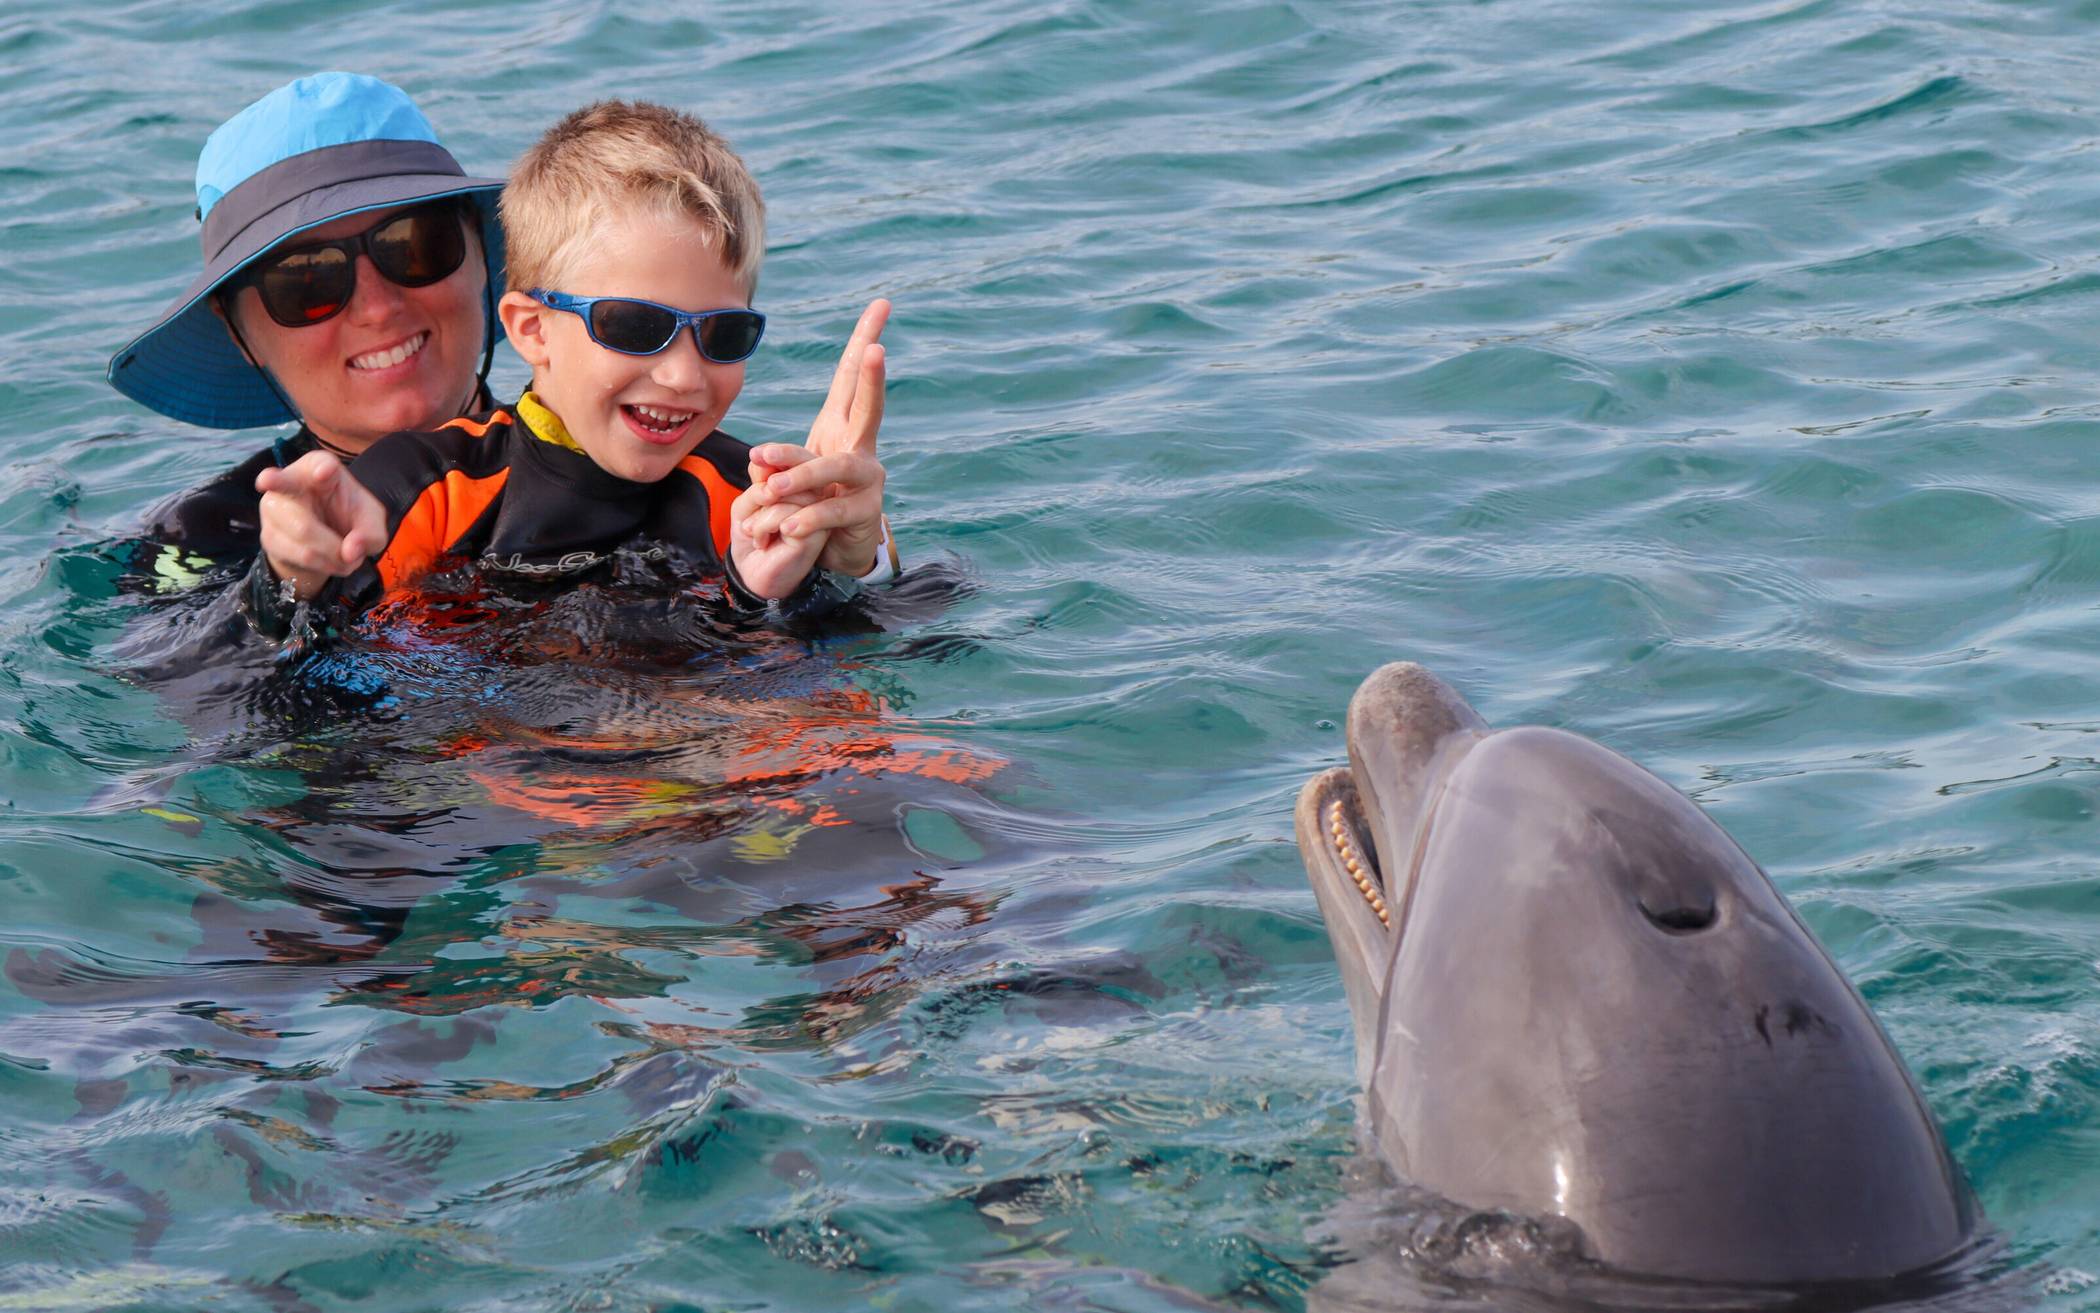  Jan und seine Trainerin arbeiteten jeden Tag mit Delfin Kanoa im Wasser.  